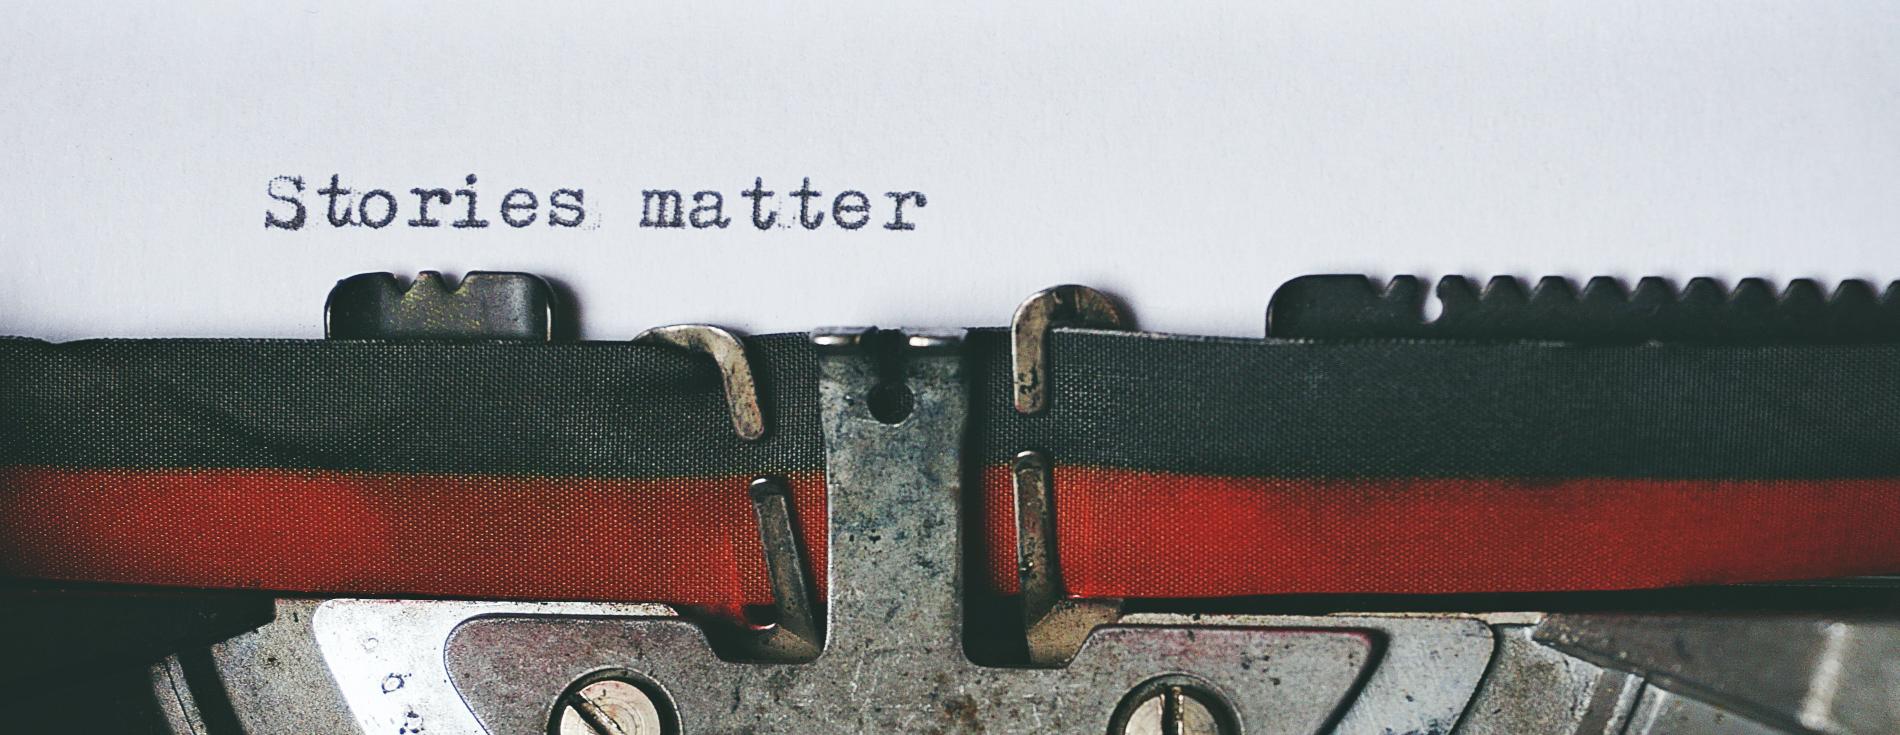 Typewriter Stories Matter